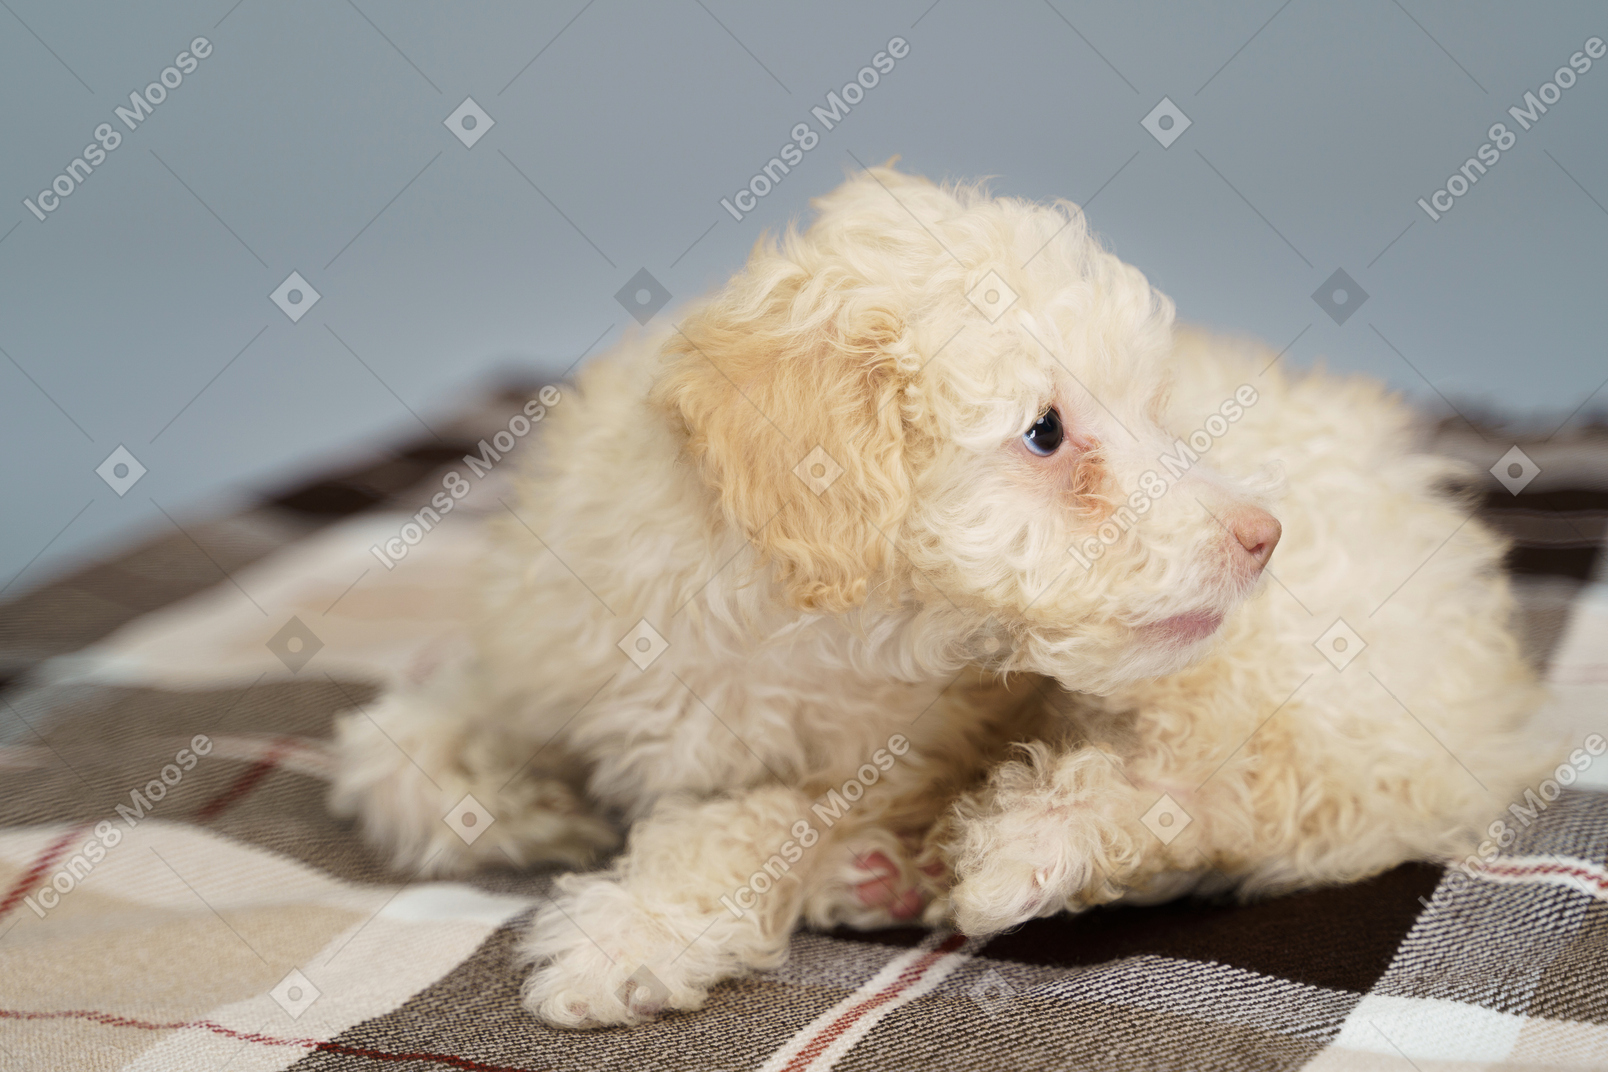 В полный рост крохотный щенок лежит на клетчатом одеяле и смотрит в сторону